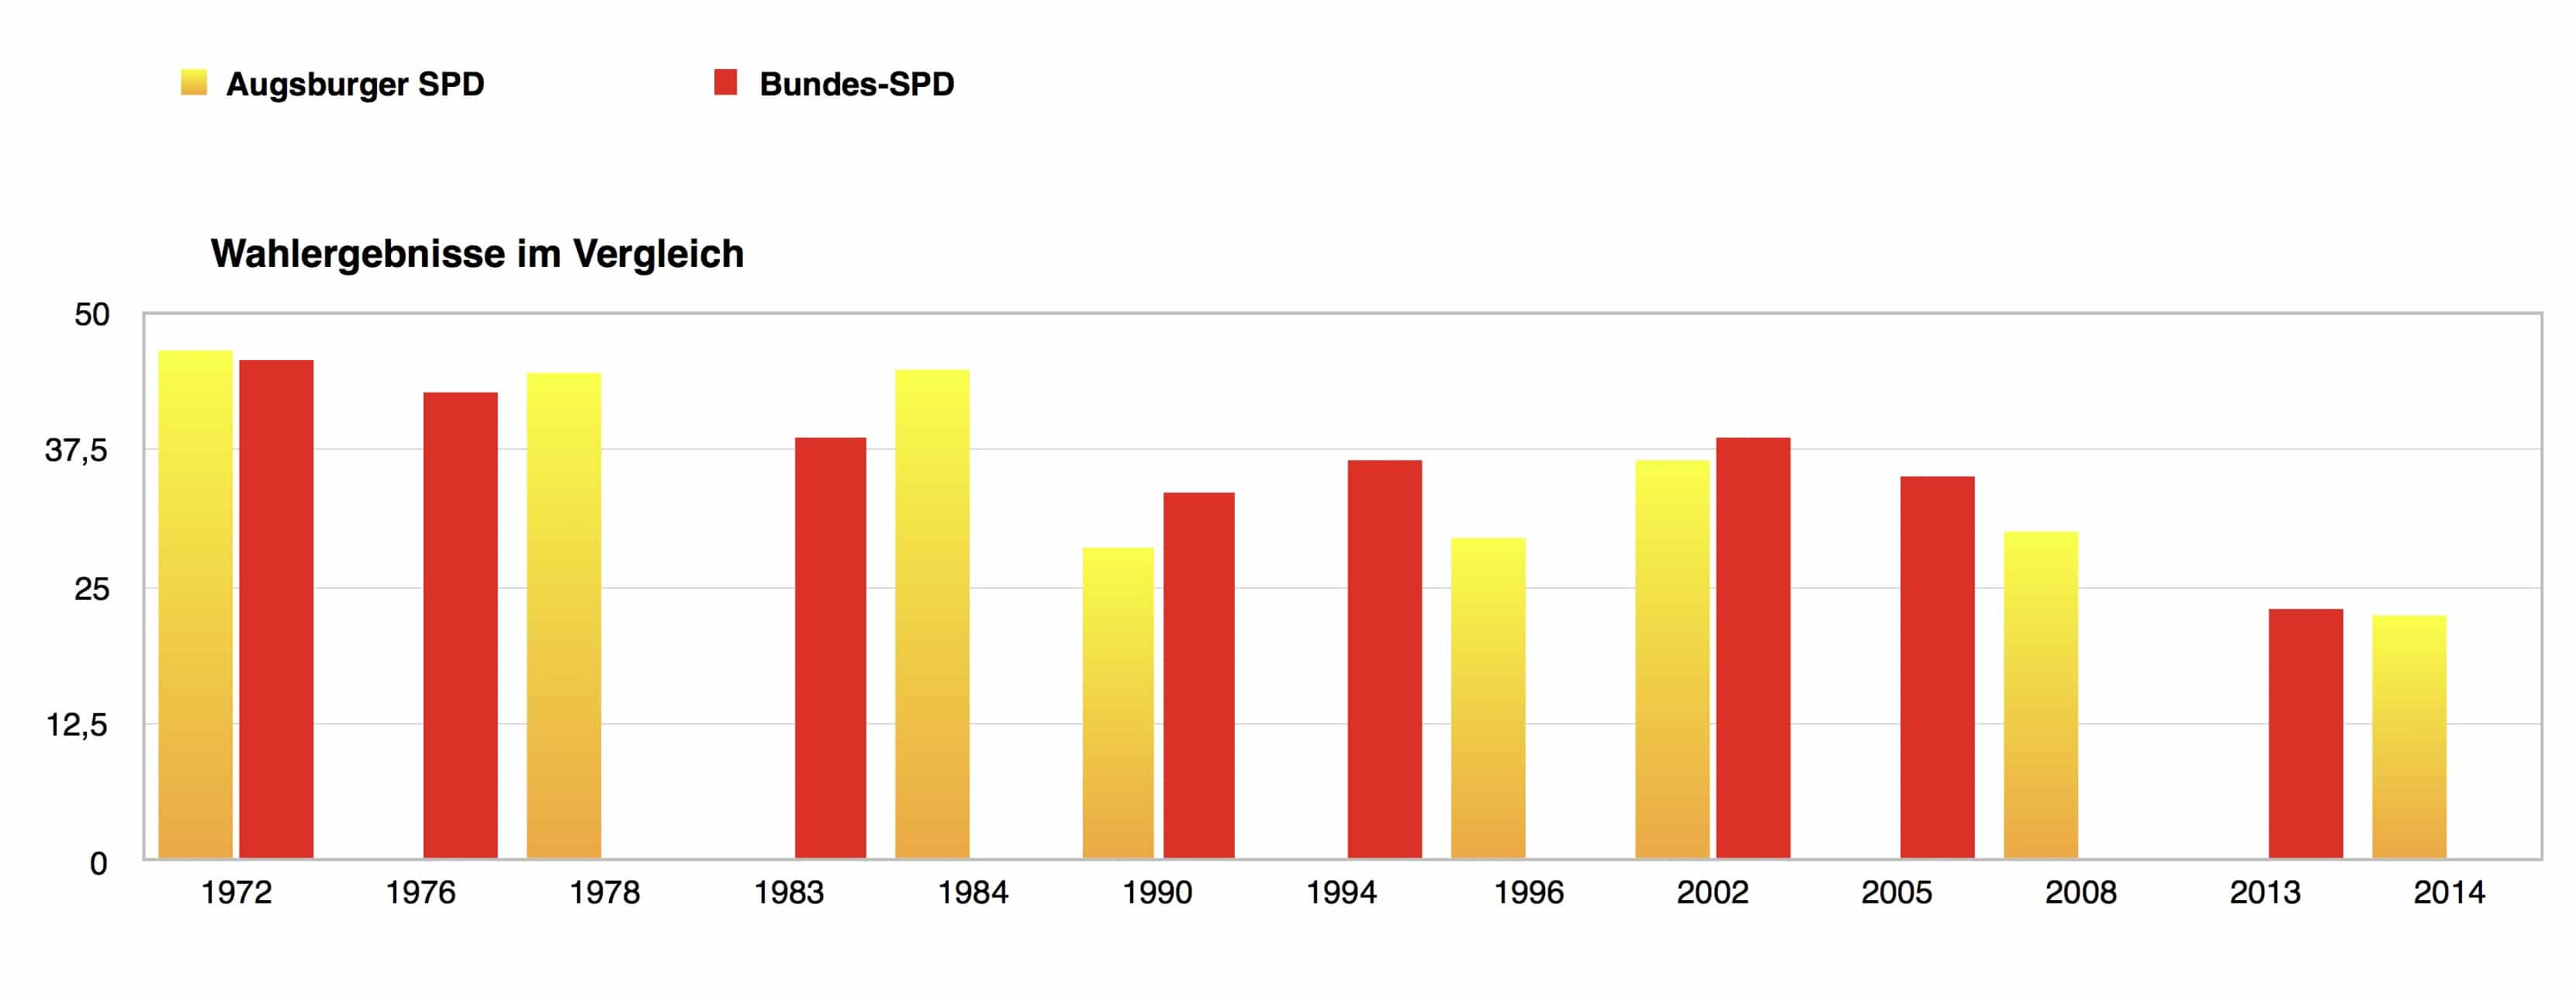 Wahlergebnisse der Augsburger SPD und der Bundes-SPD im Vergleich (c) DAZ